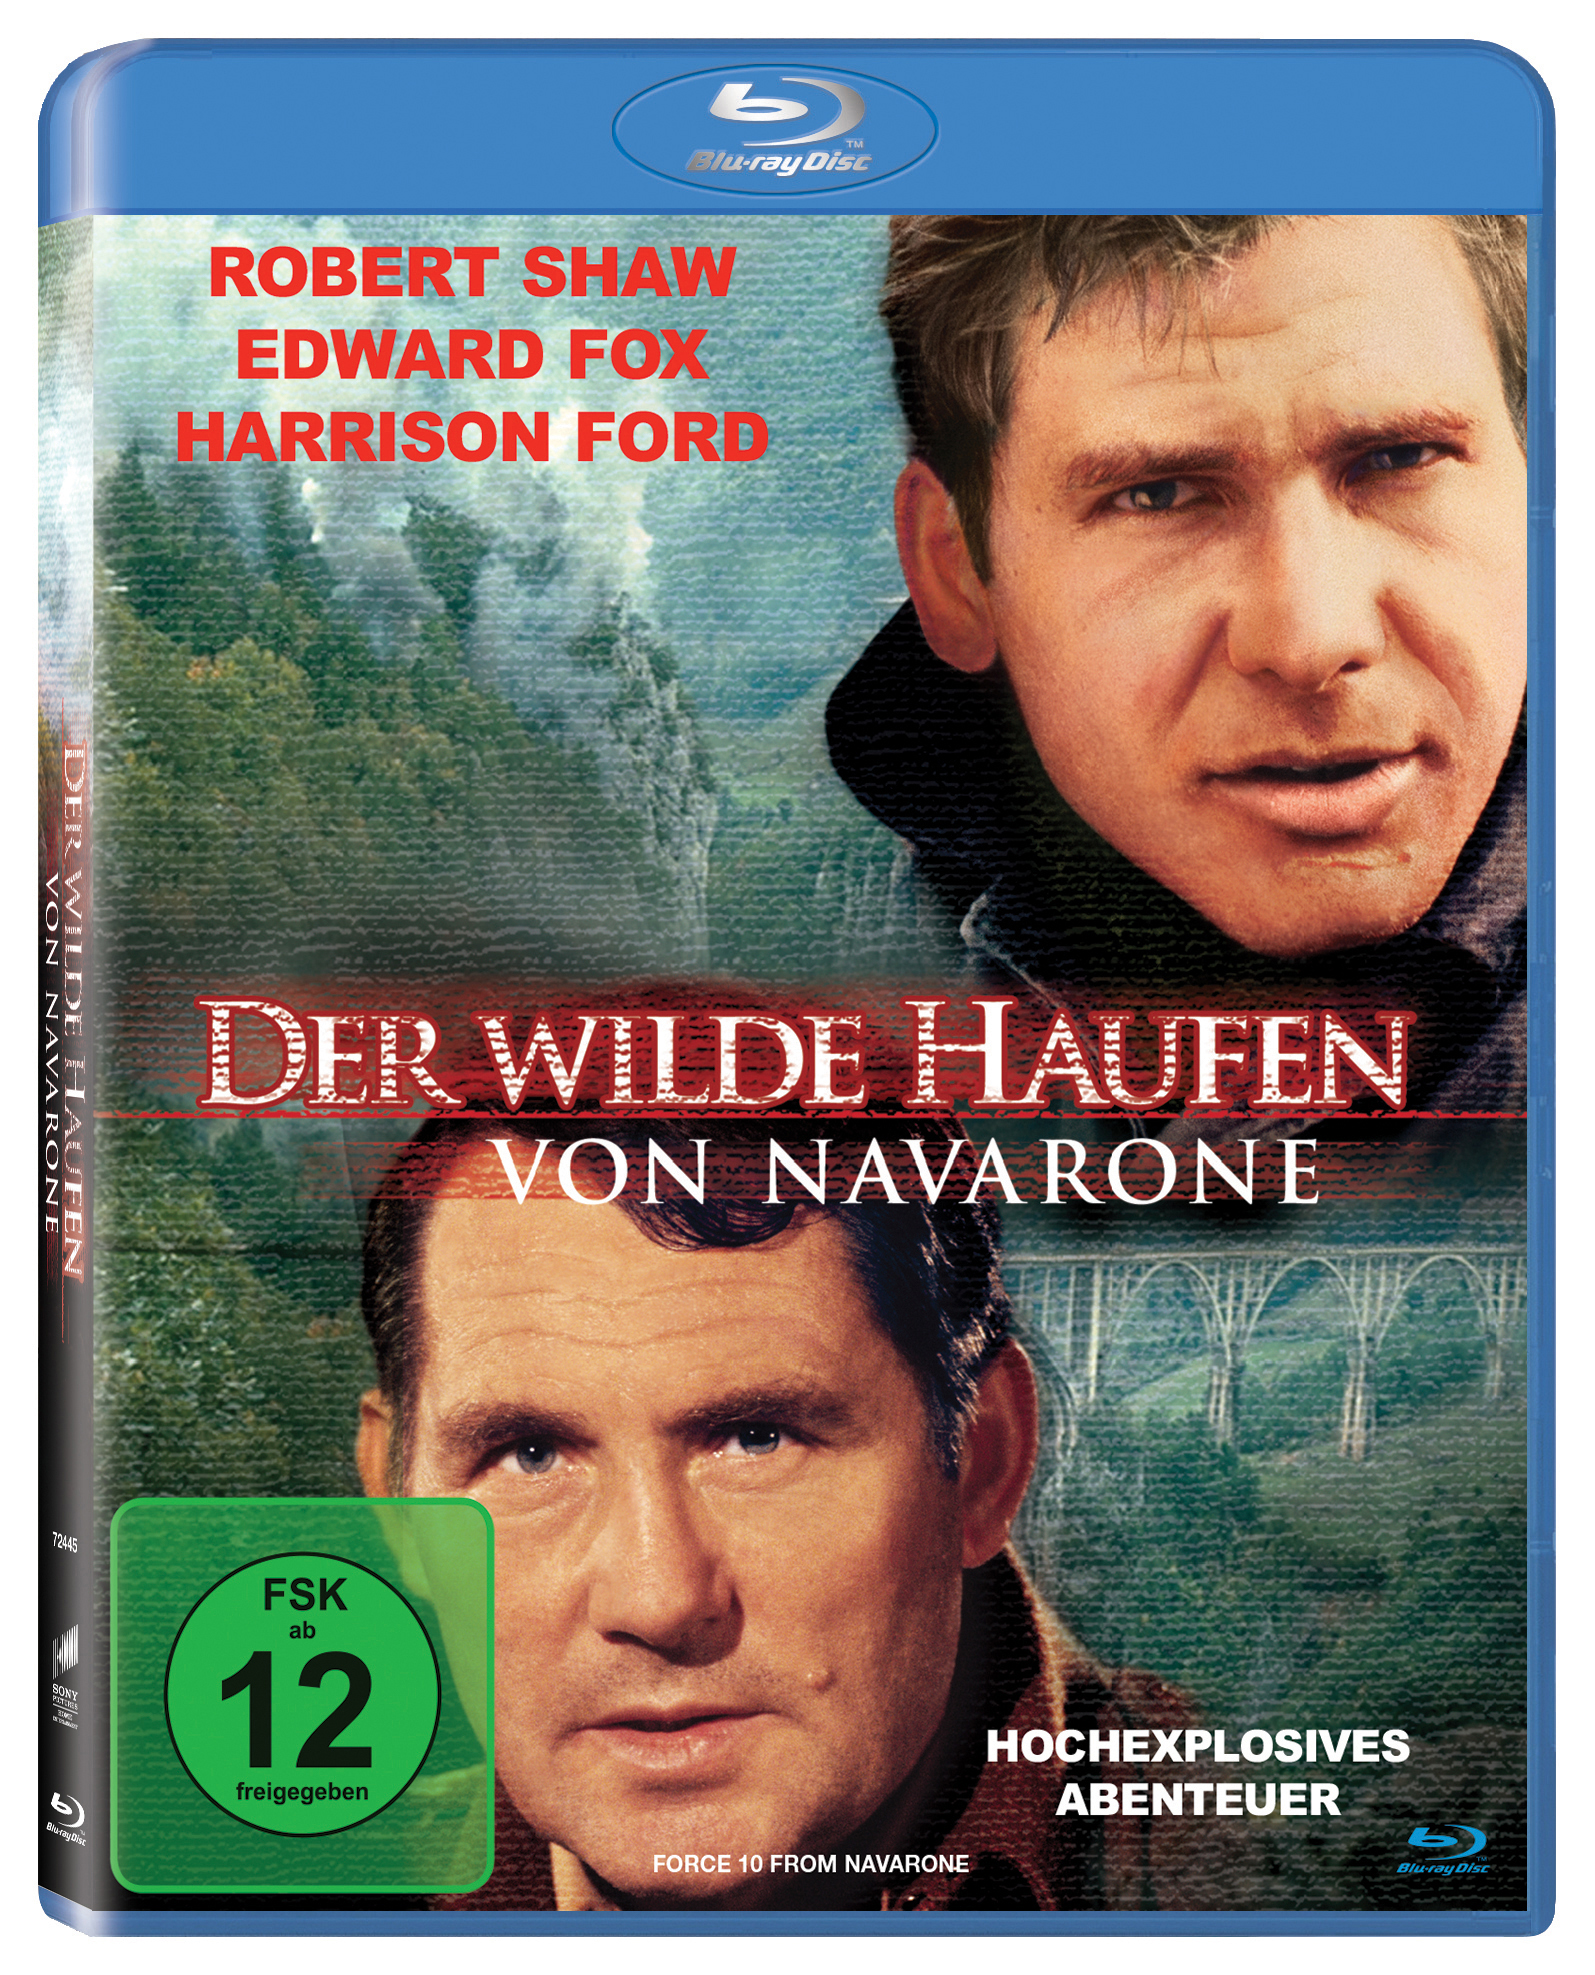 Haufen Der wilde Navarone Blu-ray von